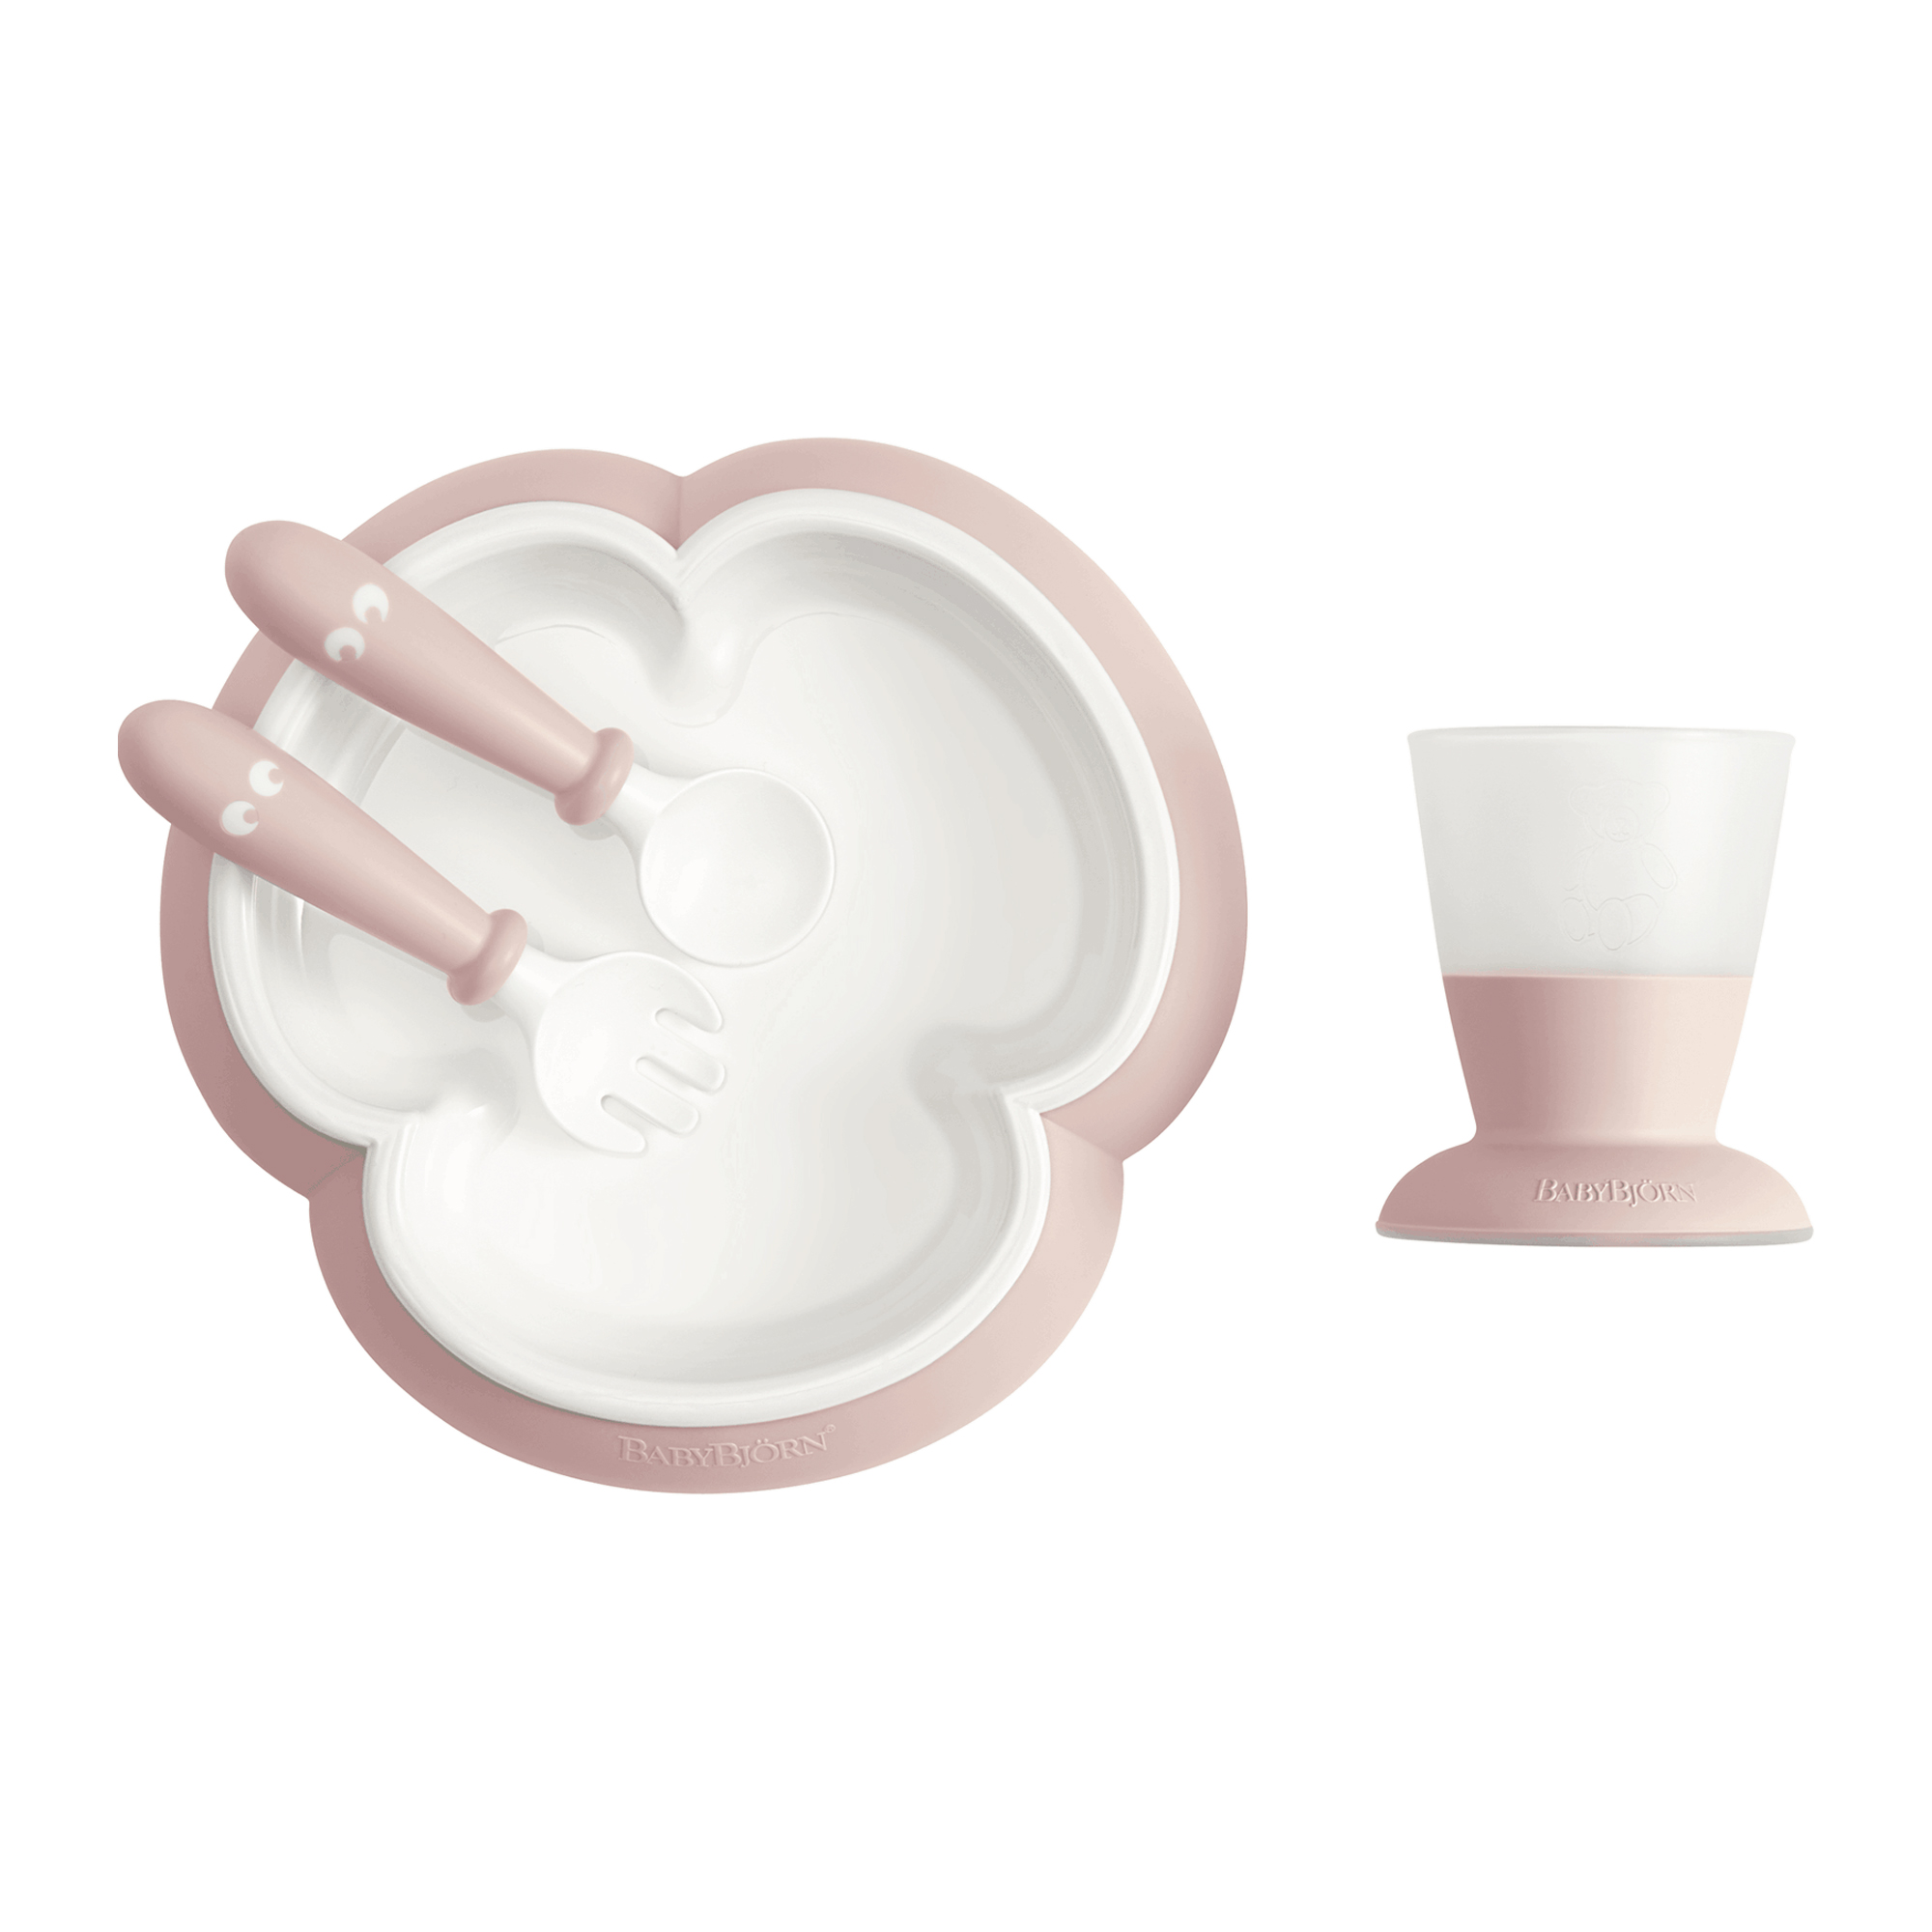 Дитячий набір для годування (ложка, виделка, чашка, тарілка) Baby Feeding Set, Powder Pink - купити в інтернет-магазині Юнимед